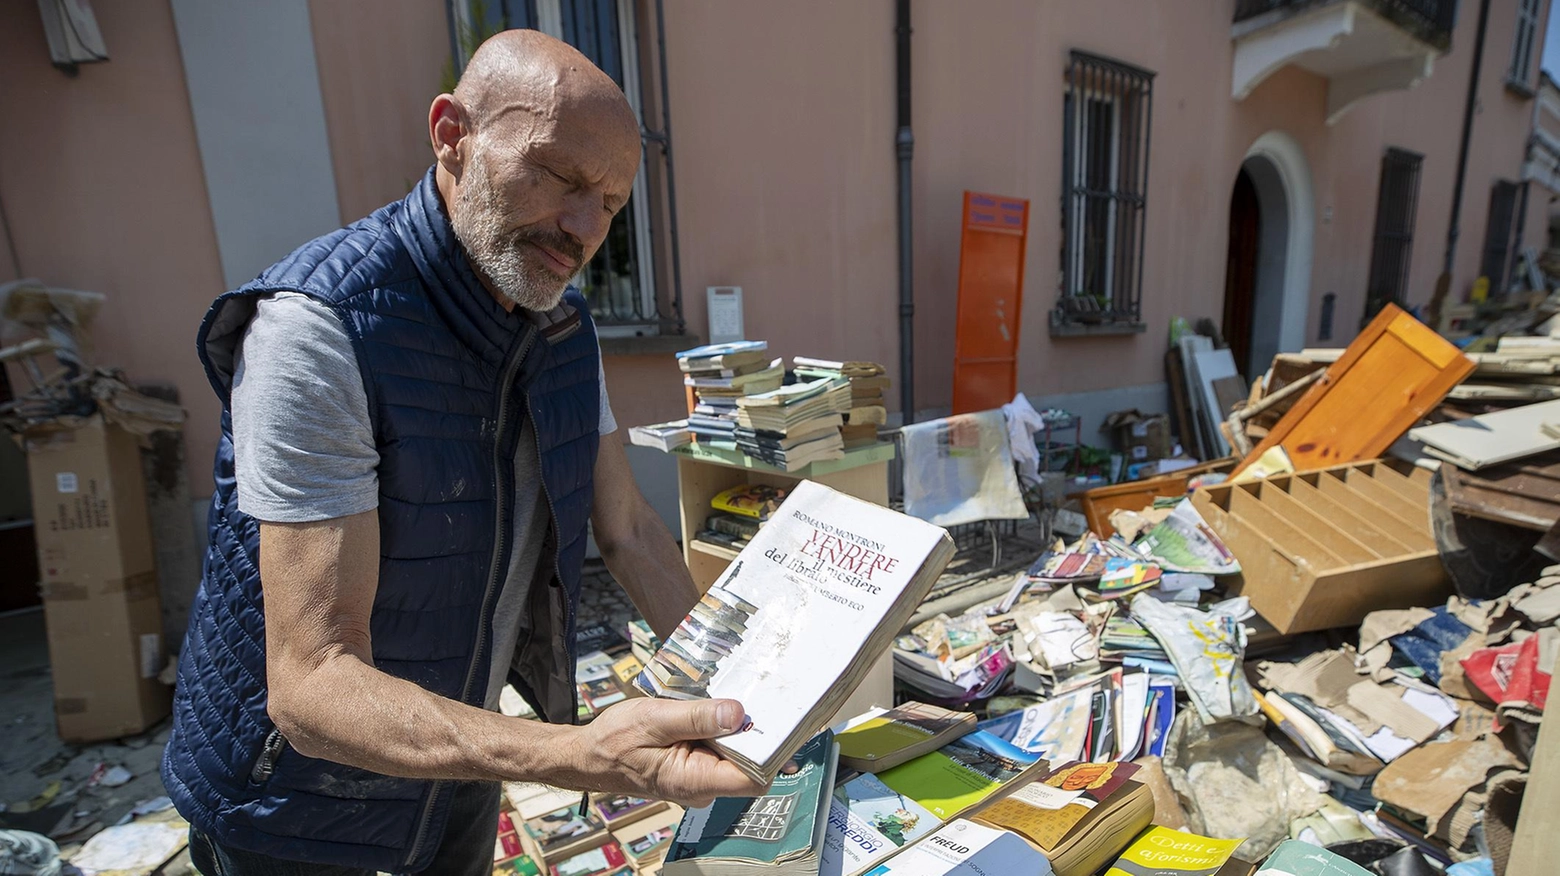 Alfabeta a Lugo  "I libri sopravvissuti  e l’immensa solidarietà"